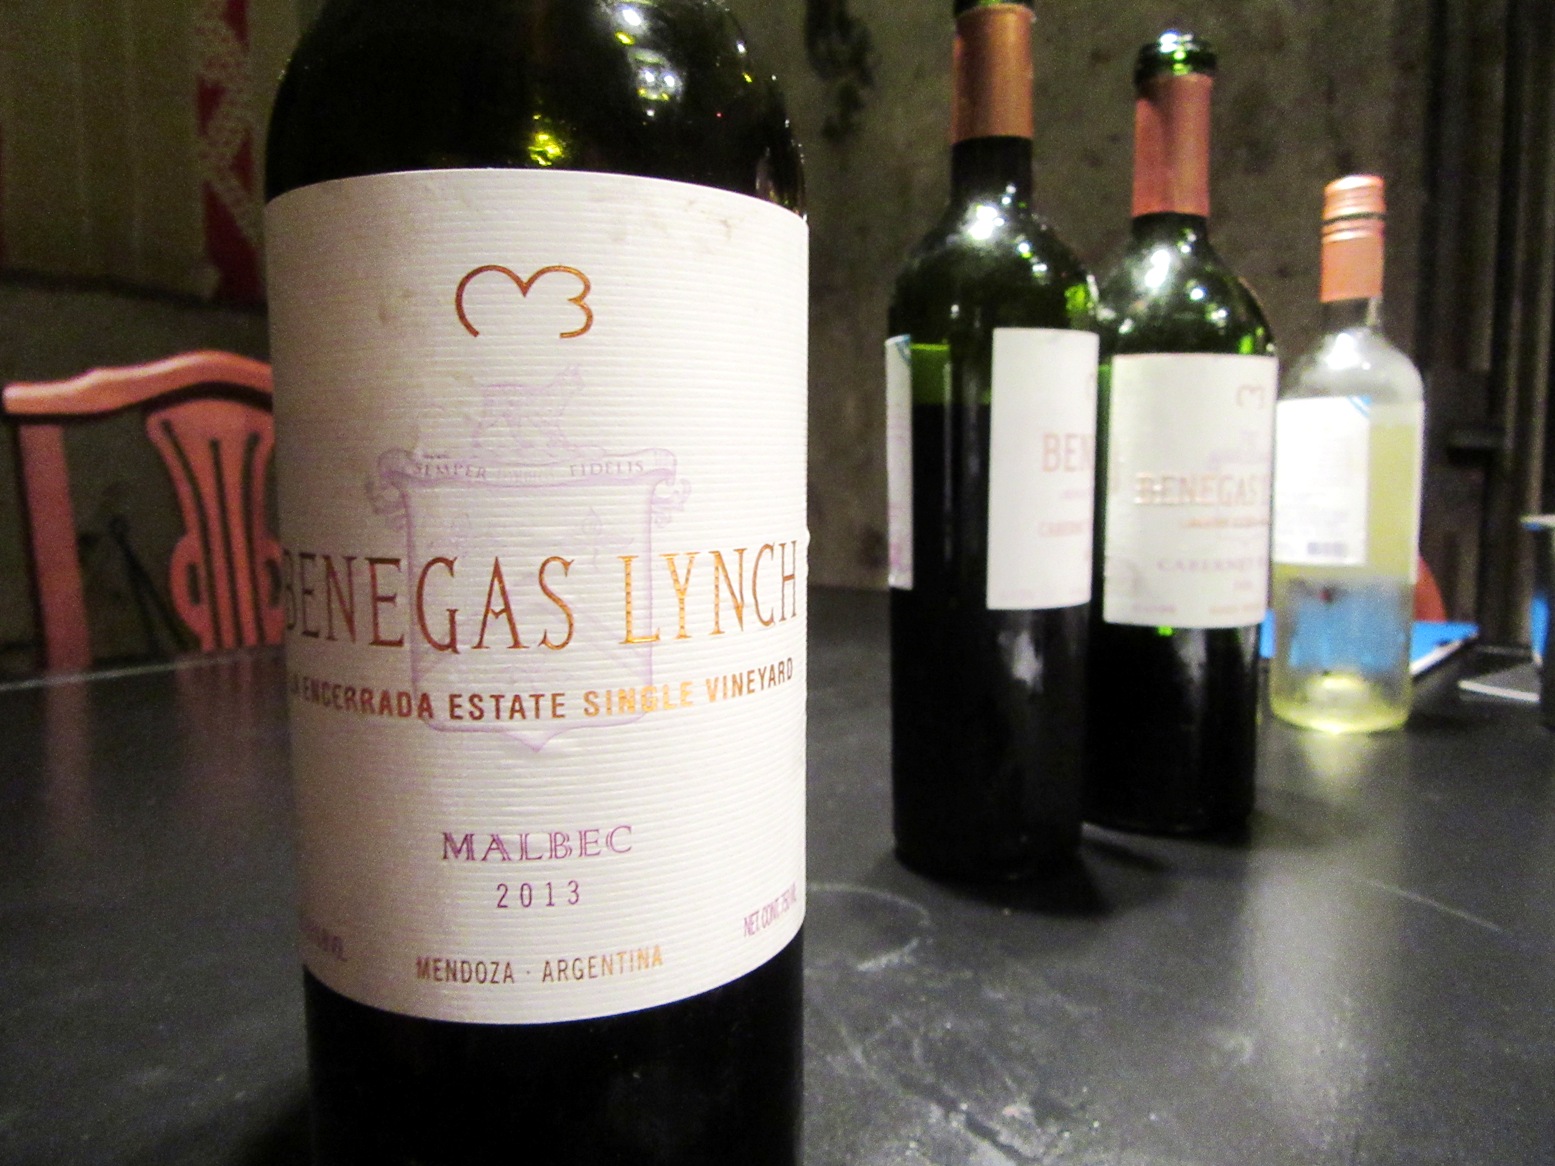 Benegas Lynch, La Encerrada Estate Single Vineyard Malbec 2013, Gualtallary, Uco Valley, Mendoza, Argentina, Wine Casual